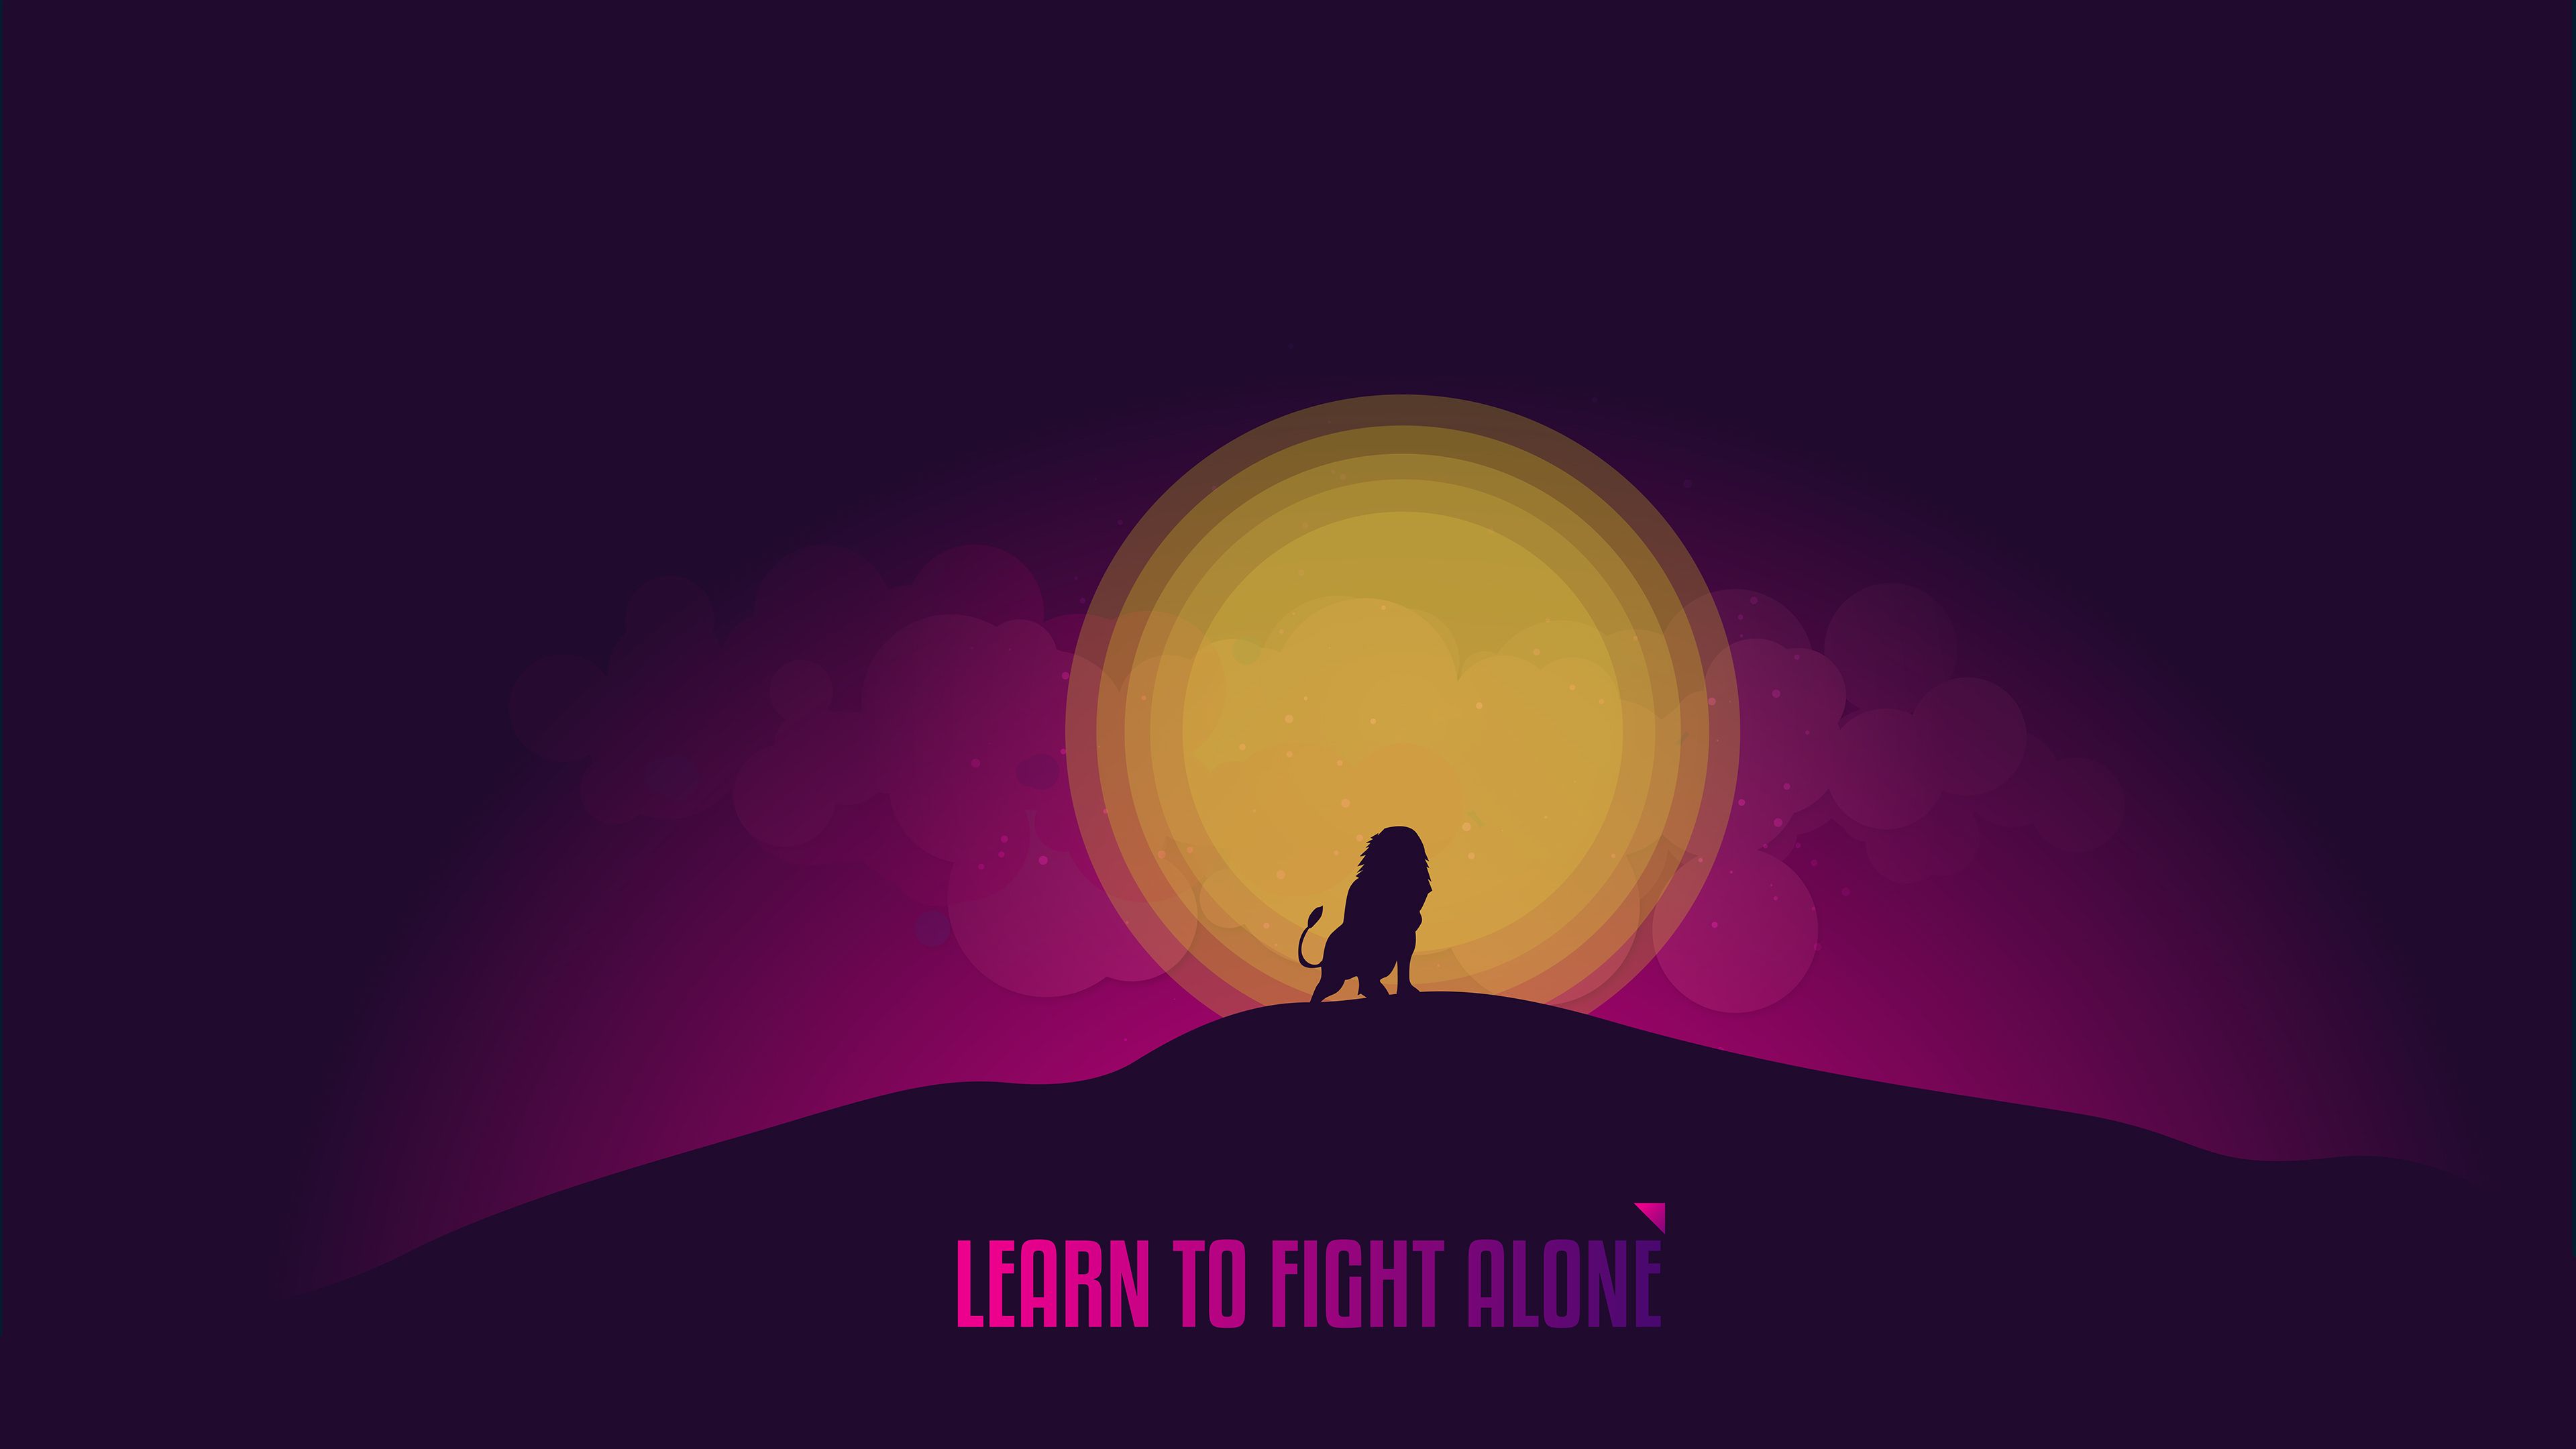 Learn to Fight Alone 4K Wallpaper, Popular quotes, Inspirational quotes, Inspiring, Motivational, Quotes